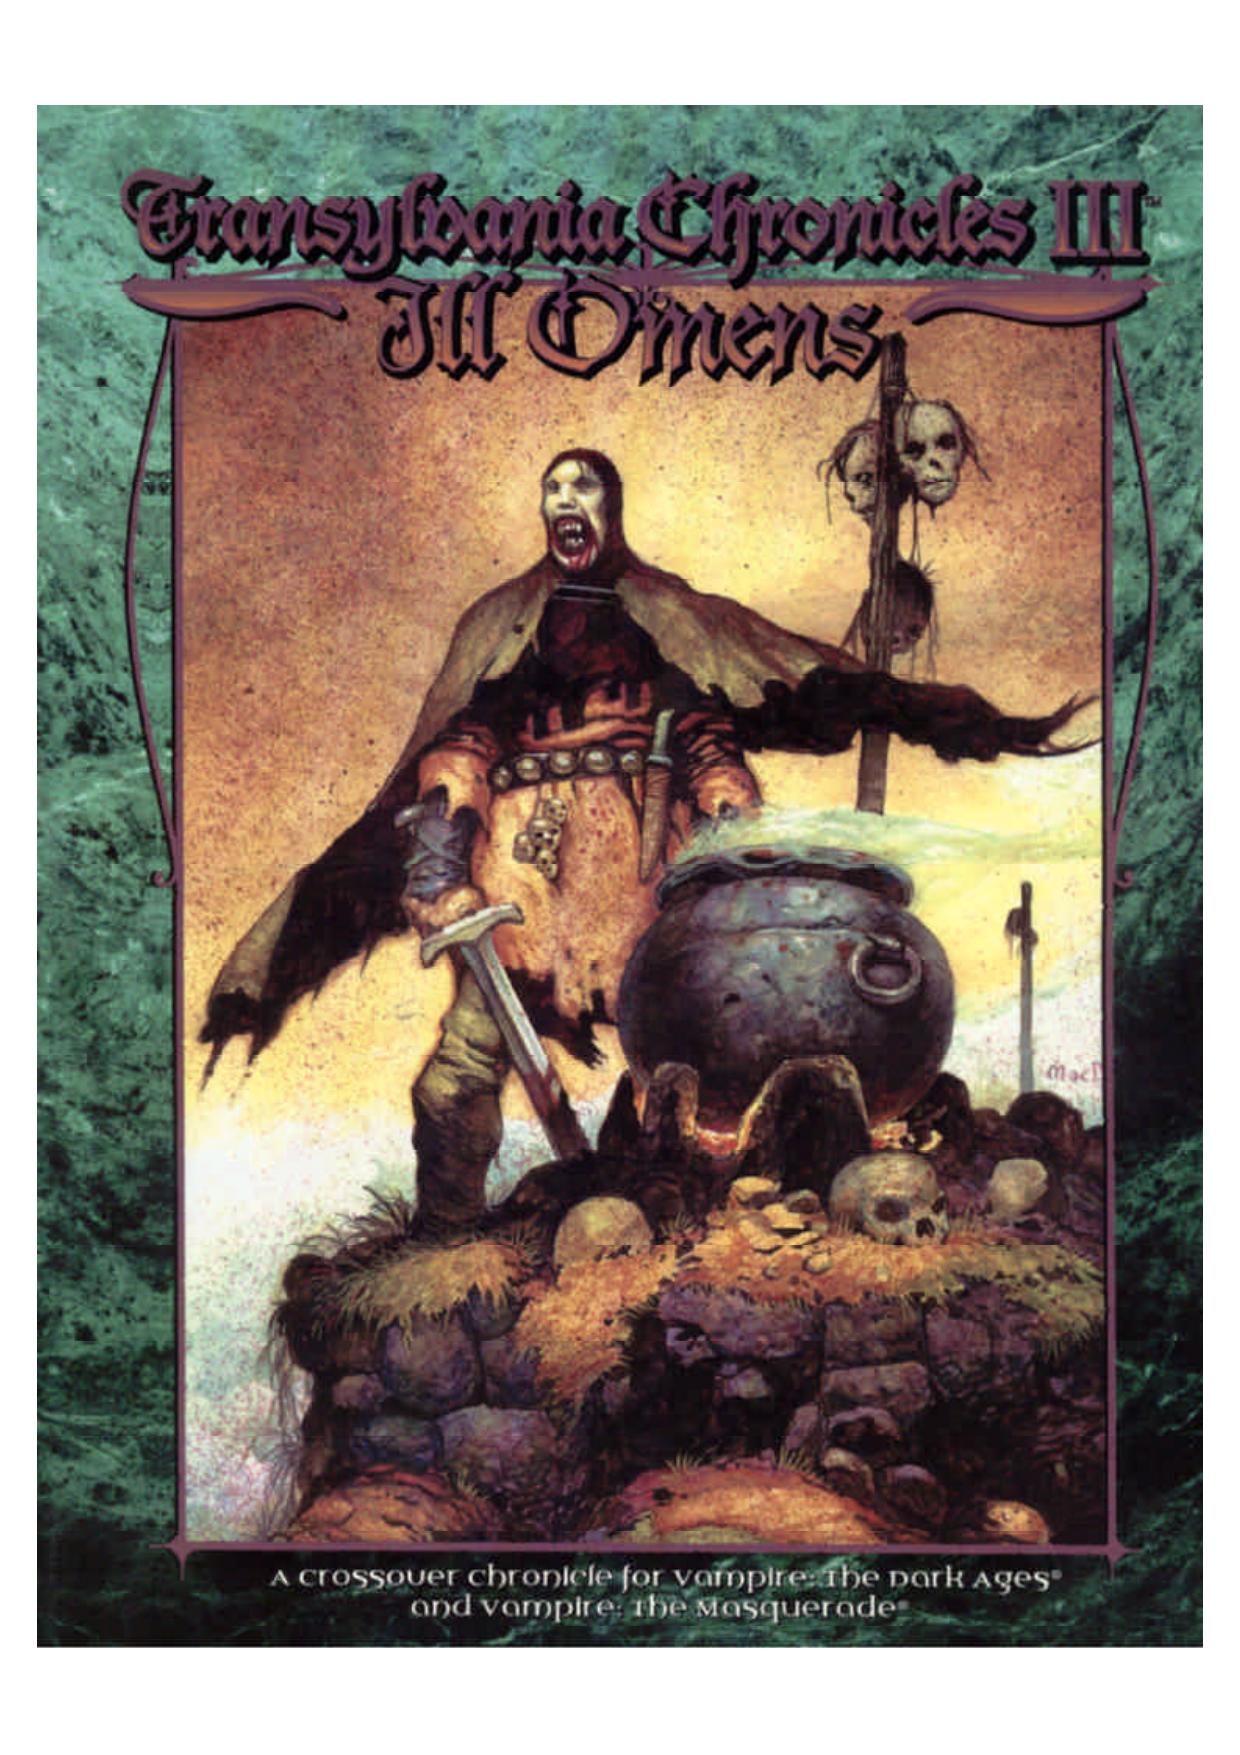 Transylvania Chronicles III: Ill Omens